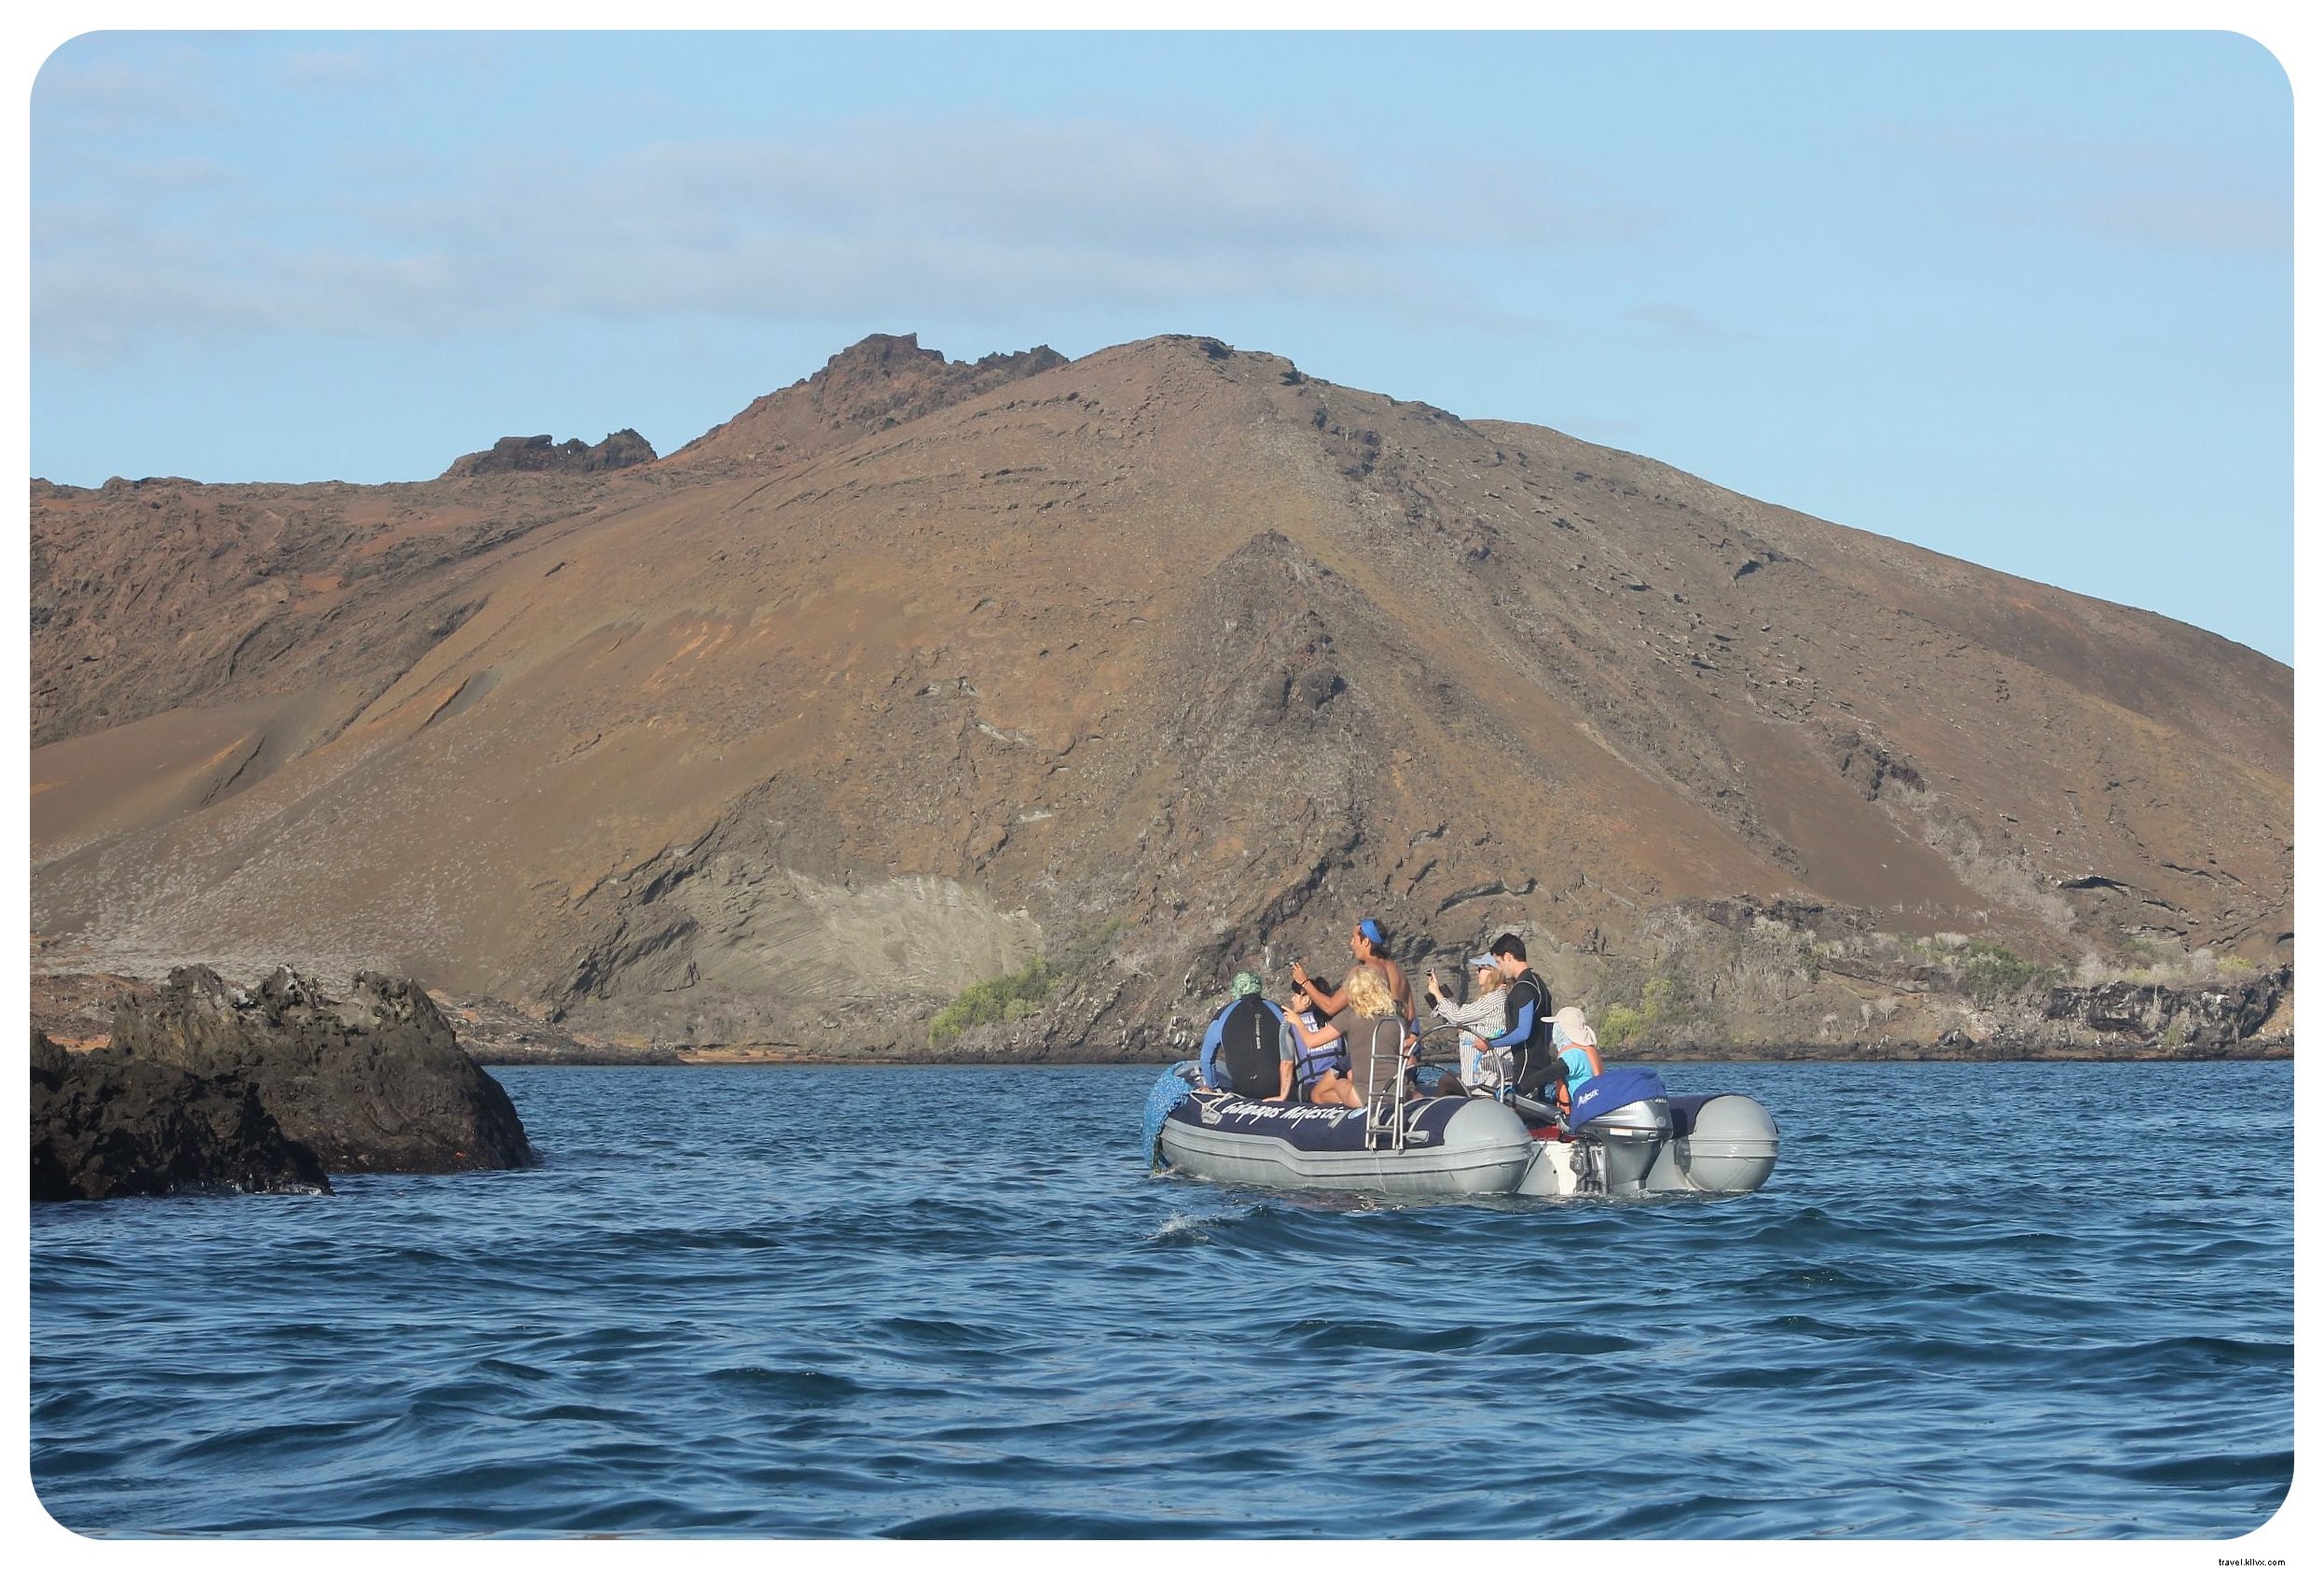 Meu cruzeiro pelas Ilhas Galápagos:Um sonho de viagem que se torna realidade